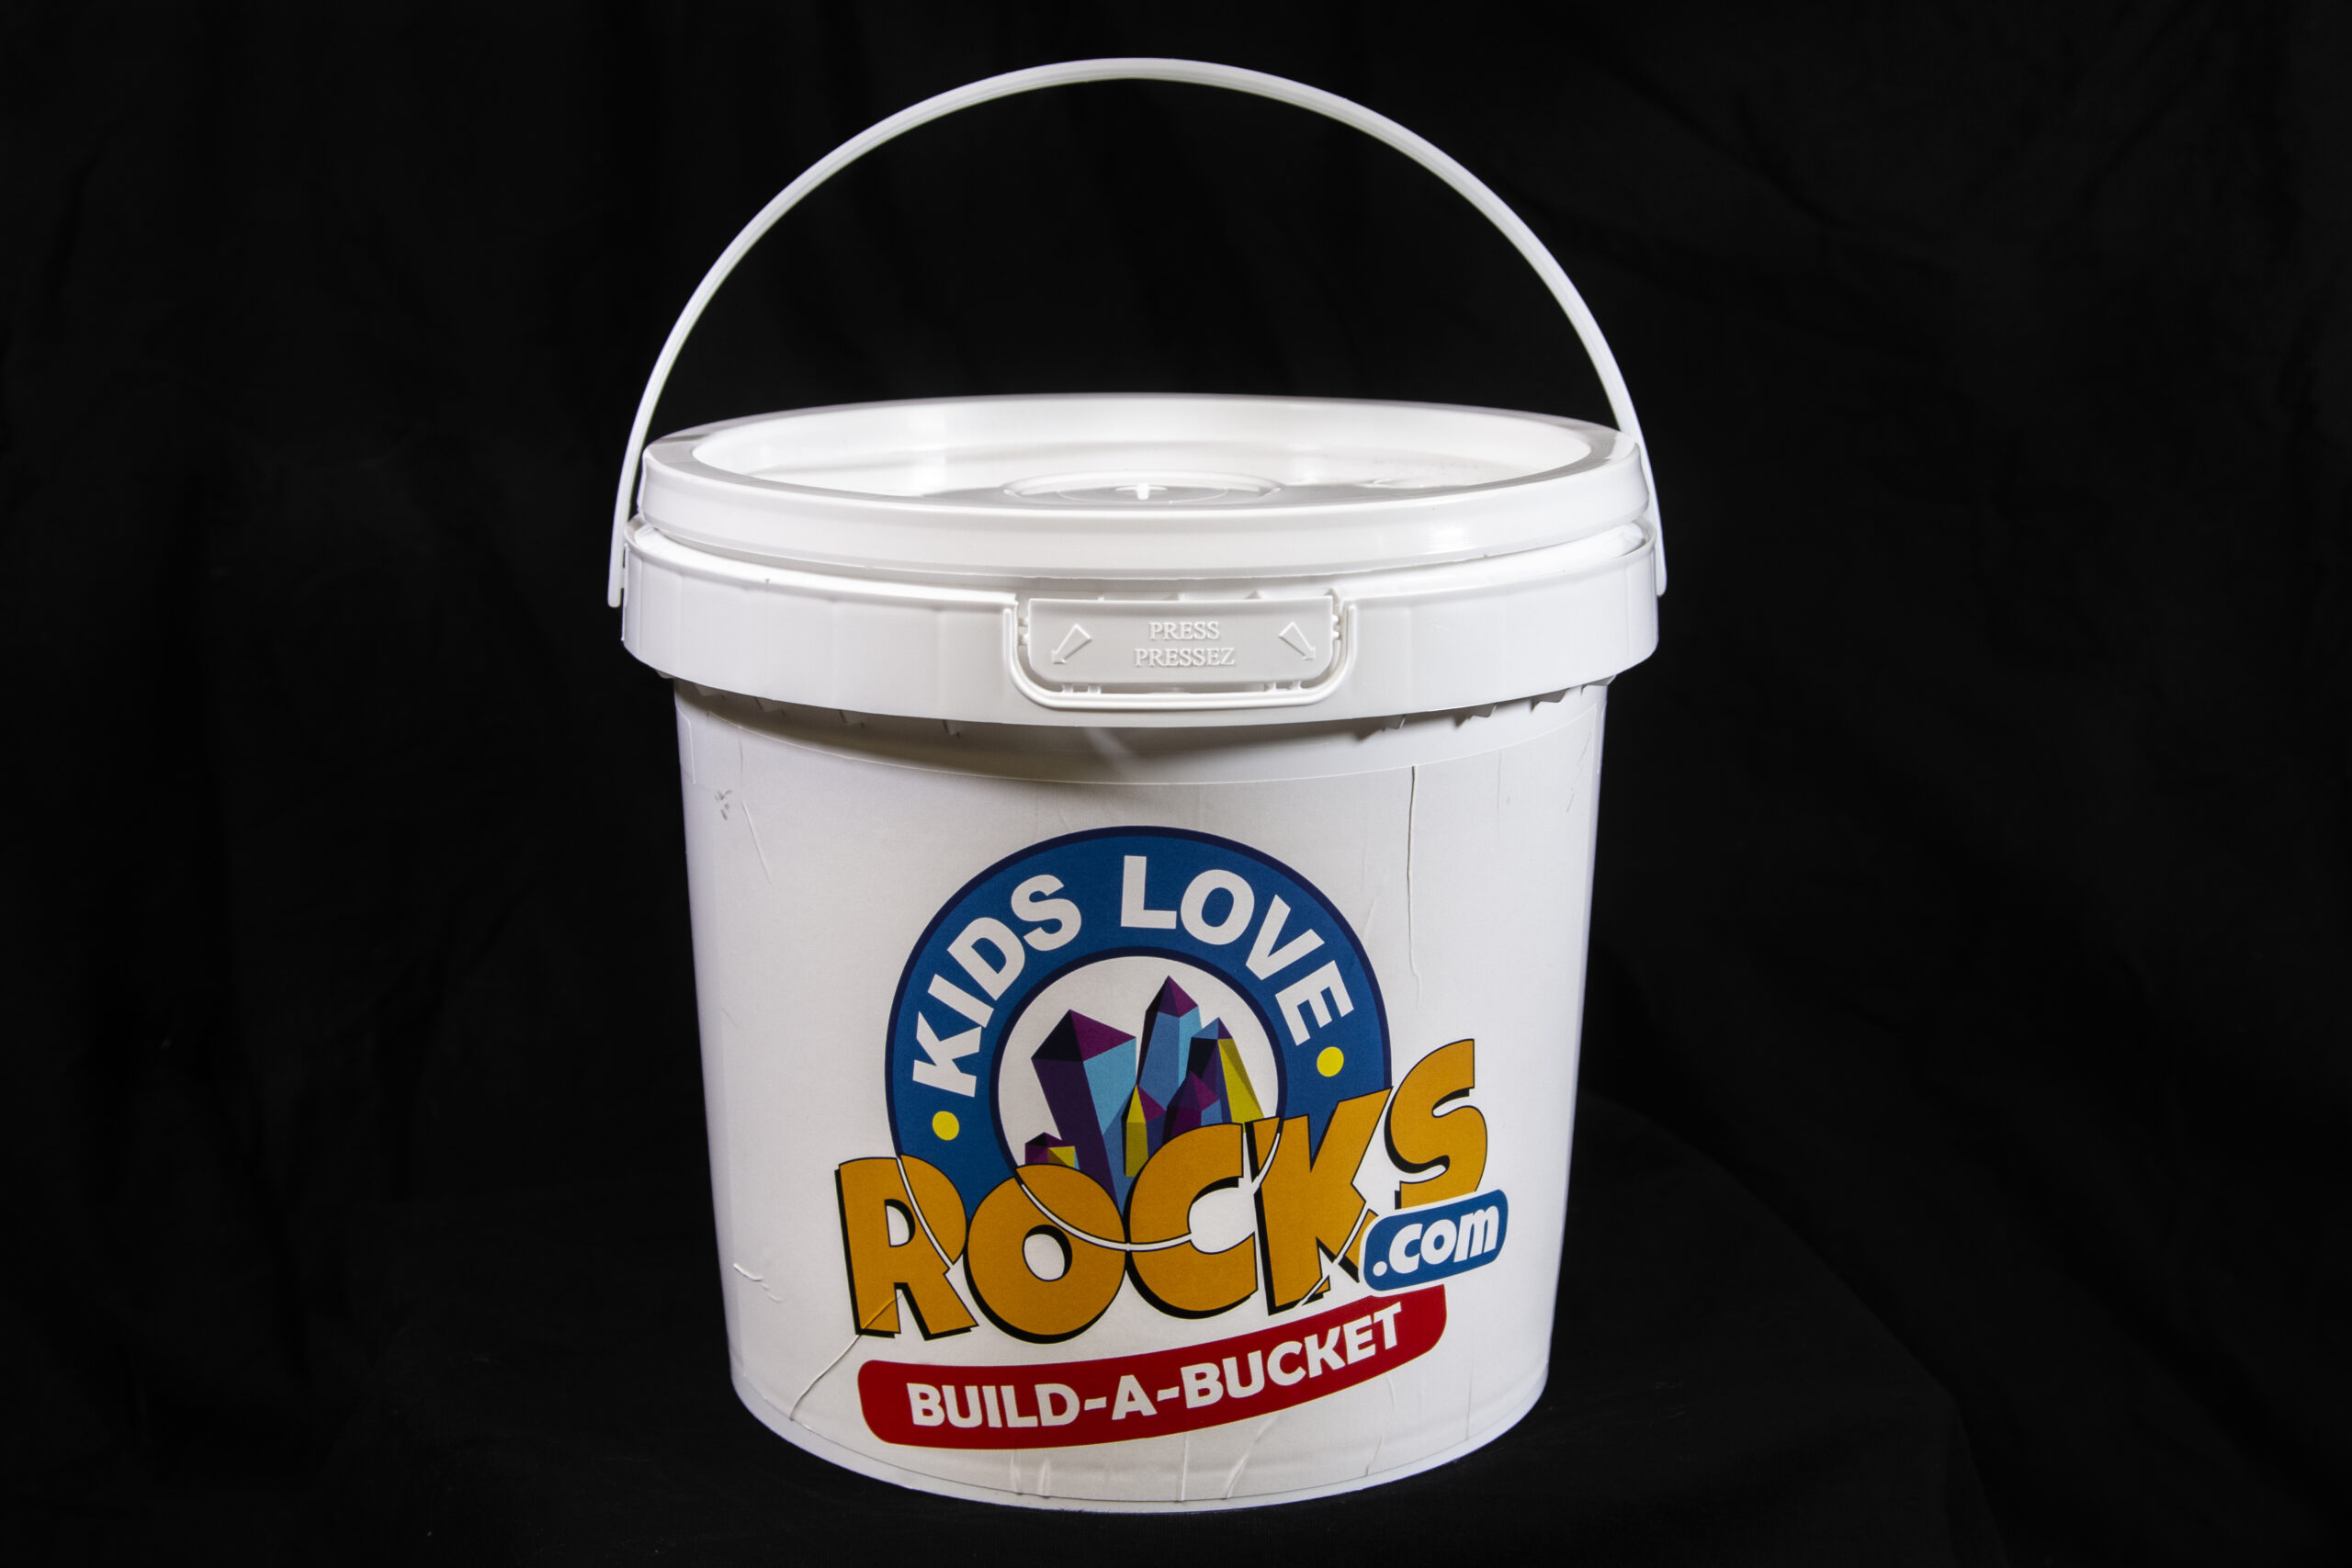 Build-A-Bucket